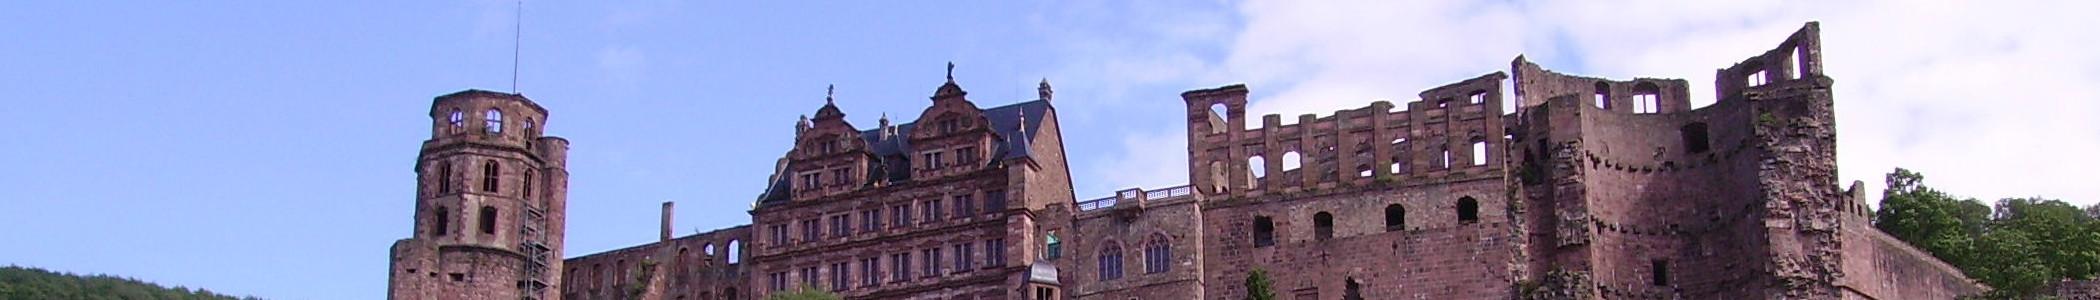 Banner image for Heidelberg on GigsGuide